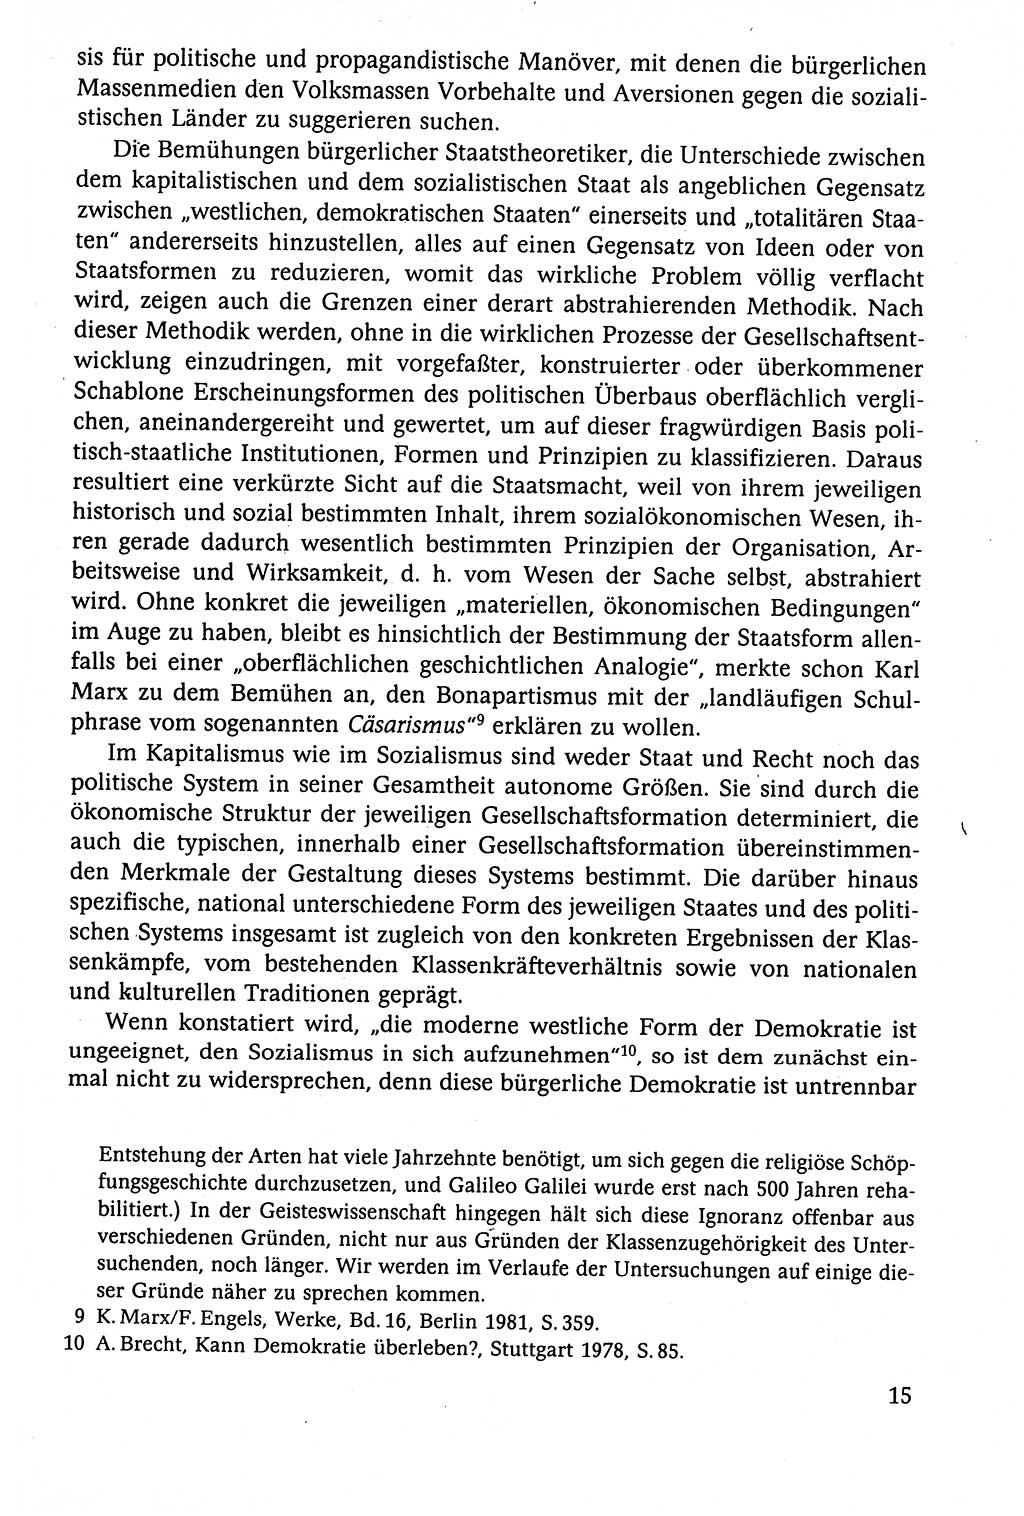 Der Staat im politischen System der DDR (Deutsche Demokratische Republik) 1986, Seite 15 (St. pol. Sys. DDR 1986, S. 15)